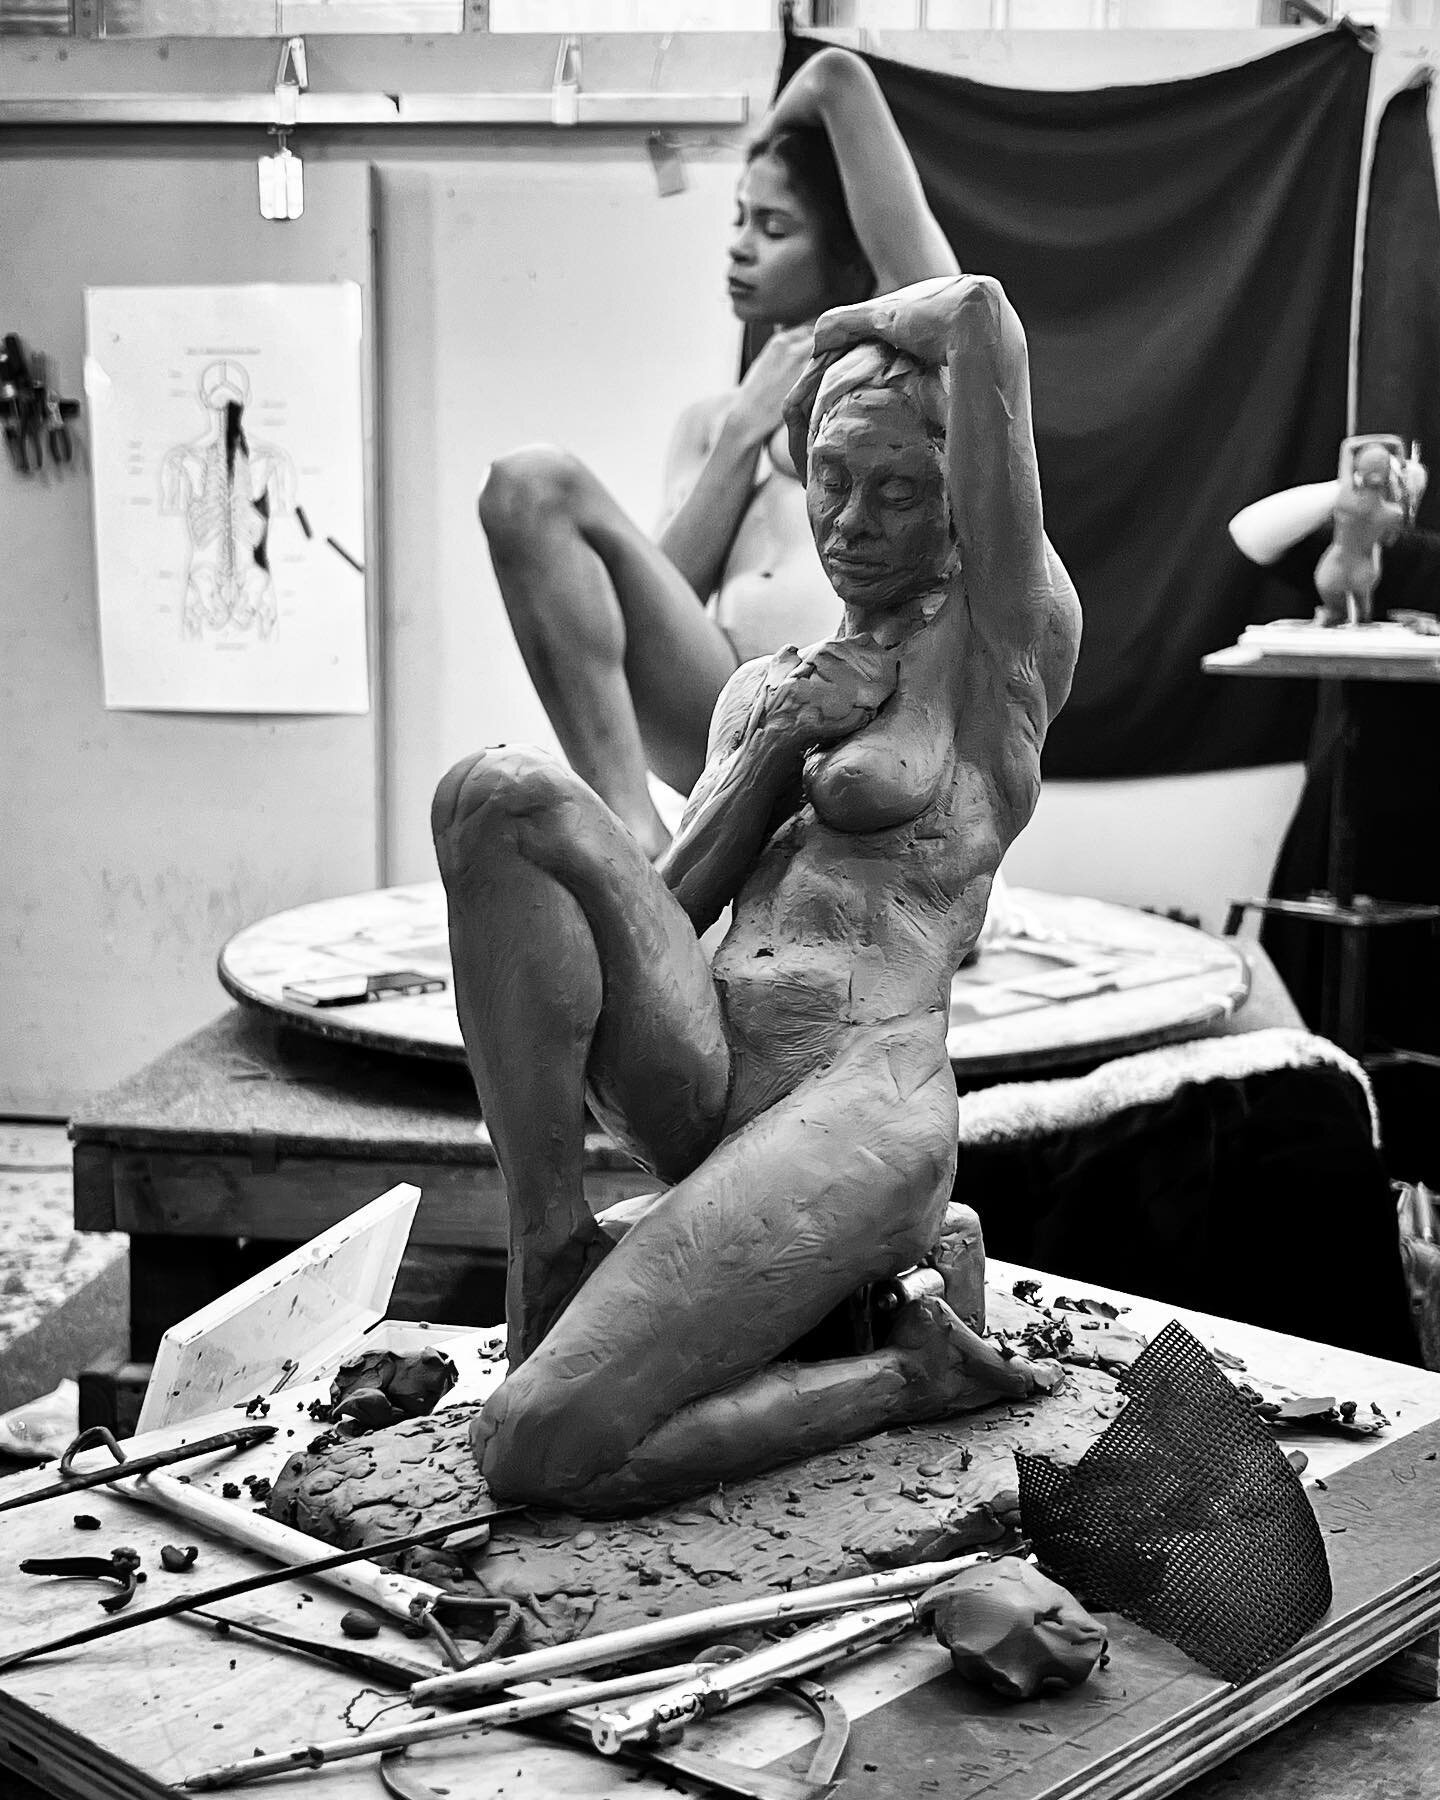 3 sessions left 
.
.
.
#chavant #claymodeling #sculpture #figuresculpture